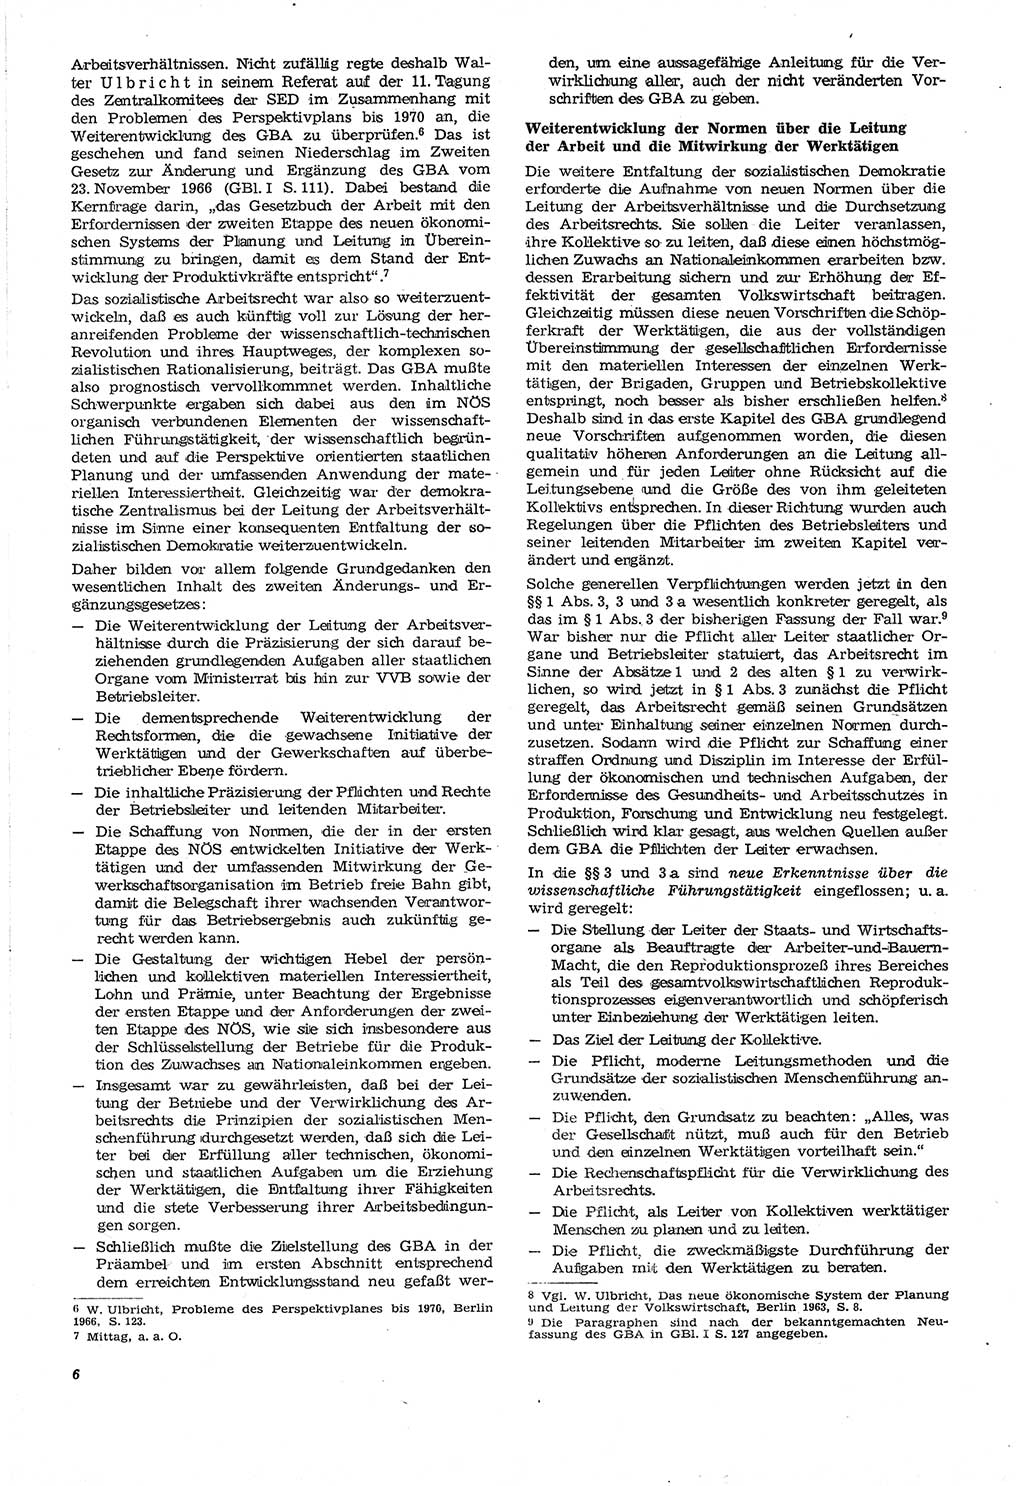 Neue Justiz (NJ), Zeitschrift für Recht und Rechtswissenschaft [Deutsche Demokratische Republik (DDR)], 21. Jahrgang 1967, Seite 6 (NJ DDR 1967, S. 6)